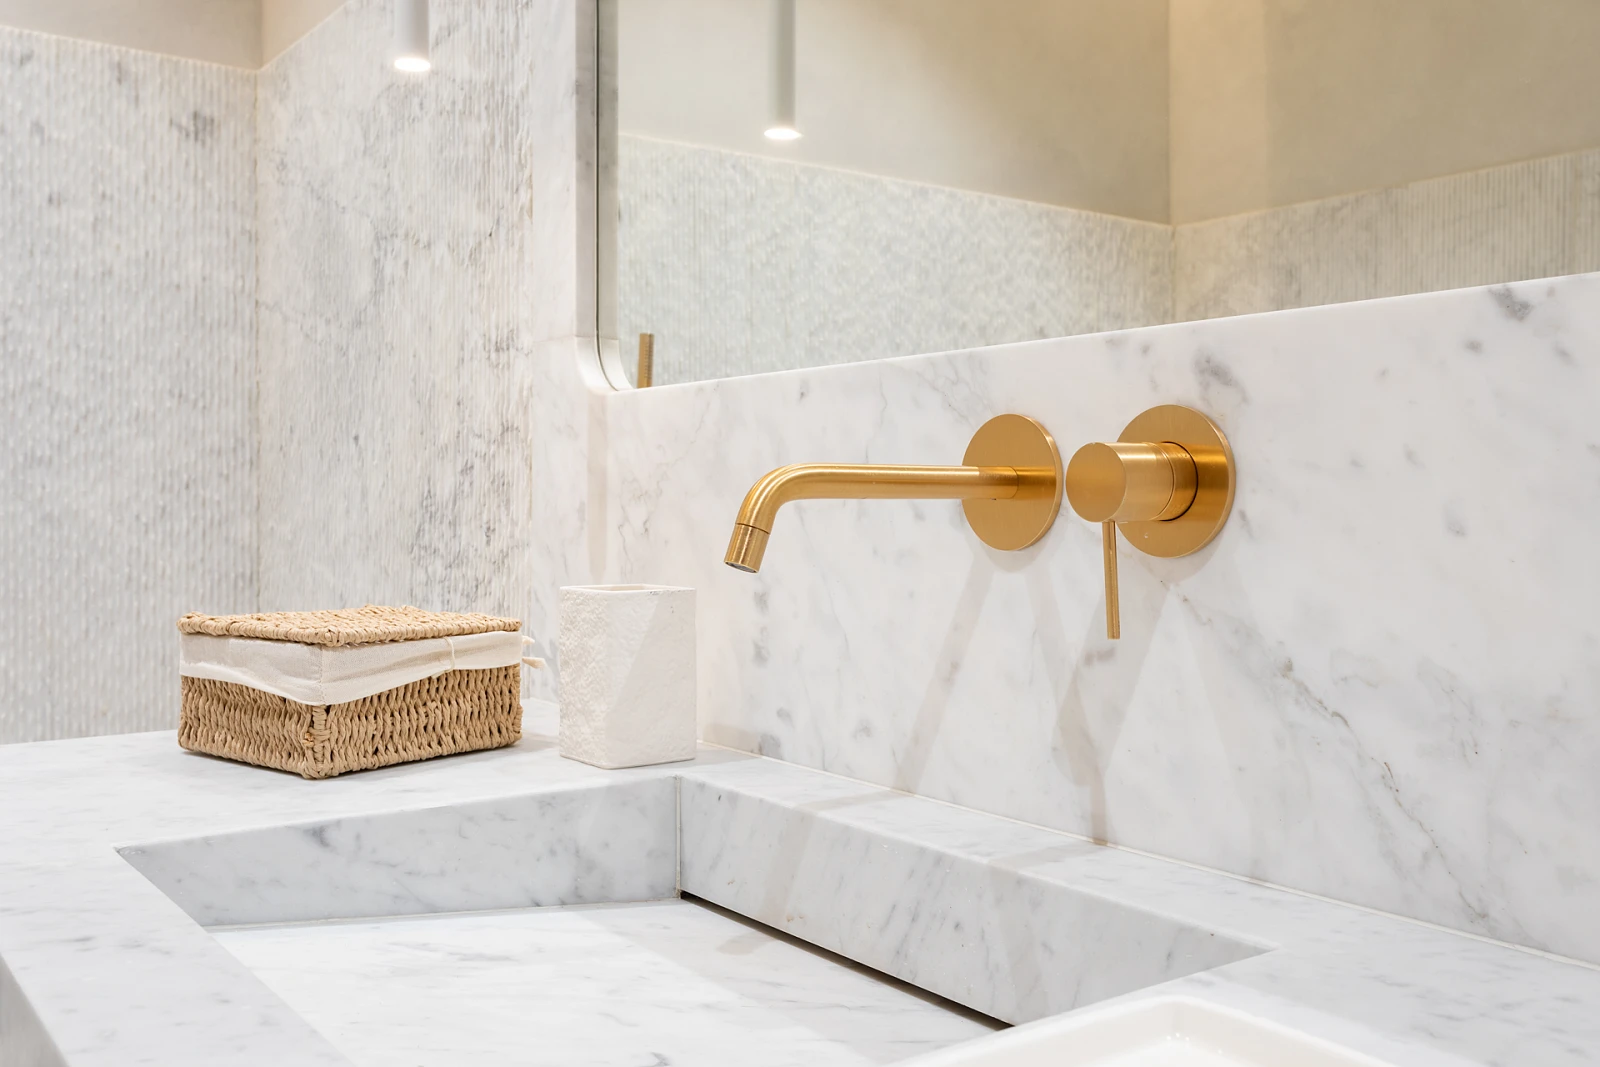 Biała łazienka z kamiennym wykończeniem i złotymi akcentami.